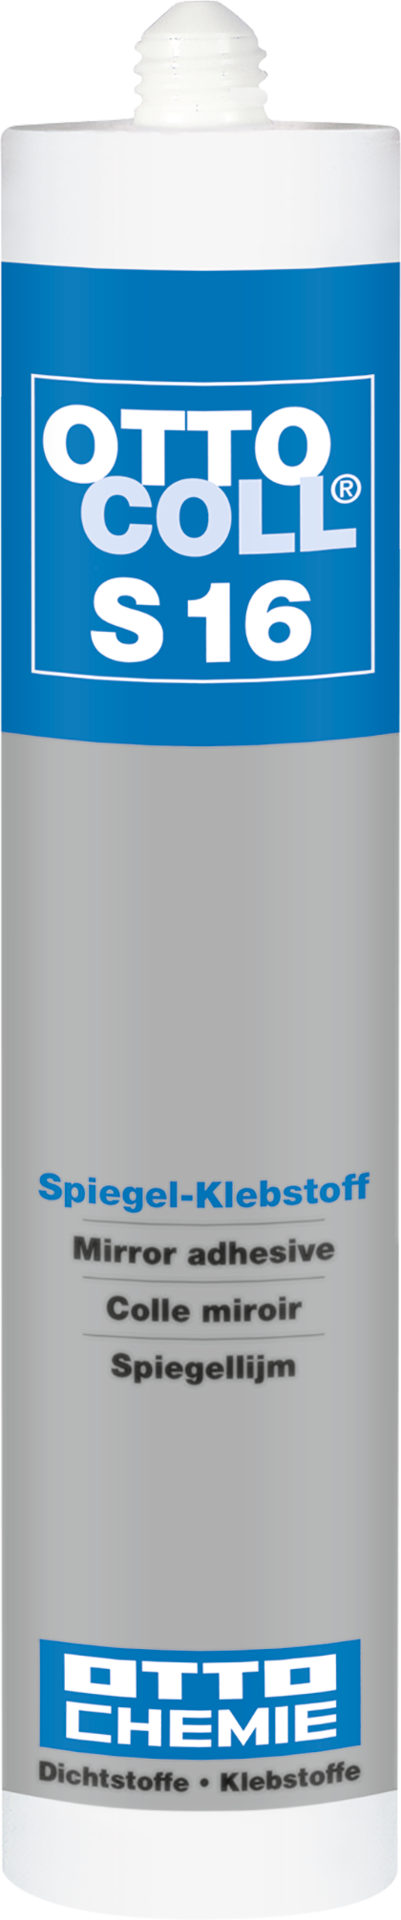 OTTOCOLL® S 16 - Der Spiegel-Klebstoff 310 ml mintweiß